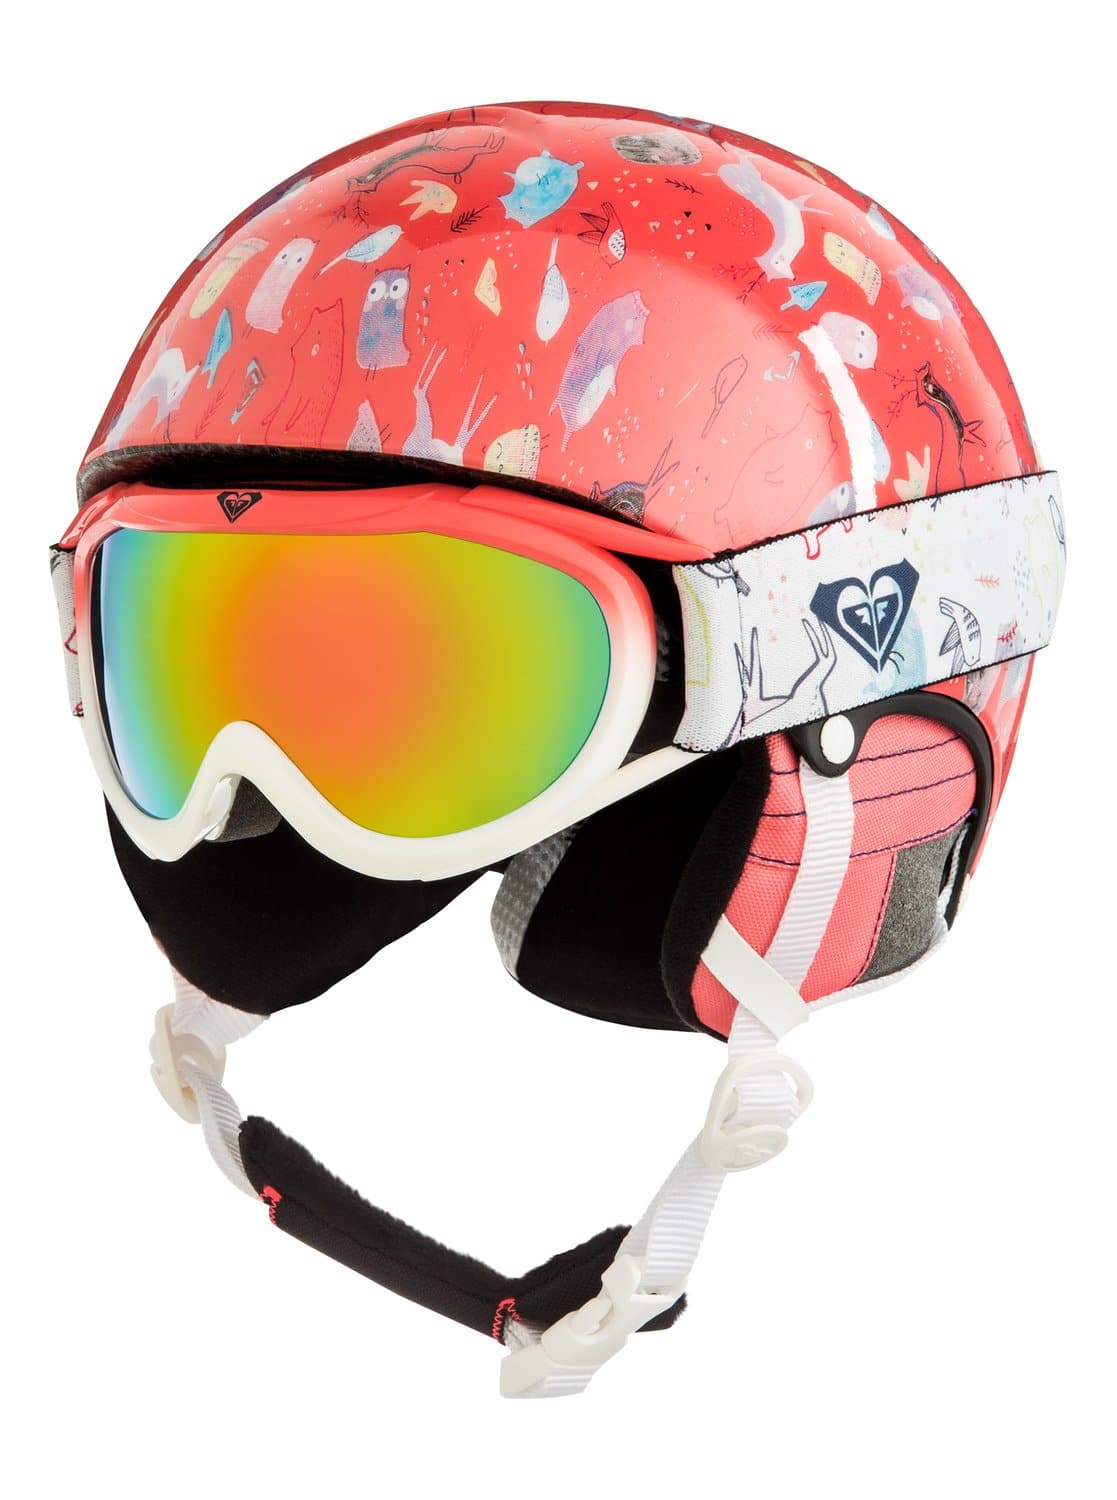 Chica con gafas de sol y casco de esquí fotografías e imágenes de